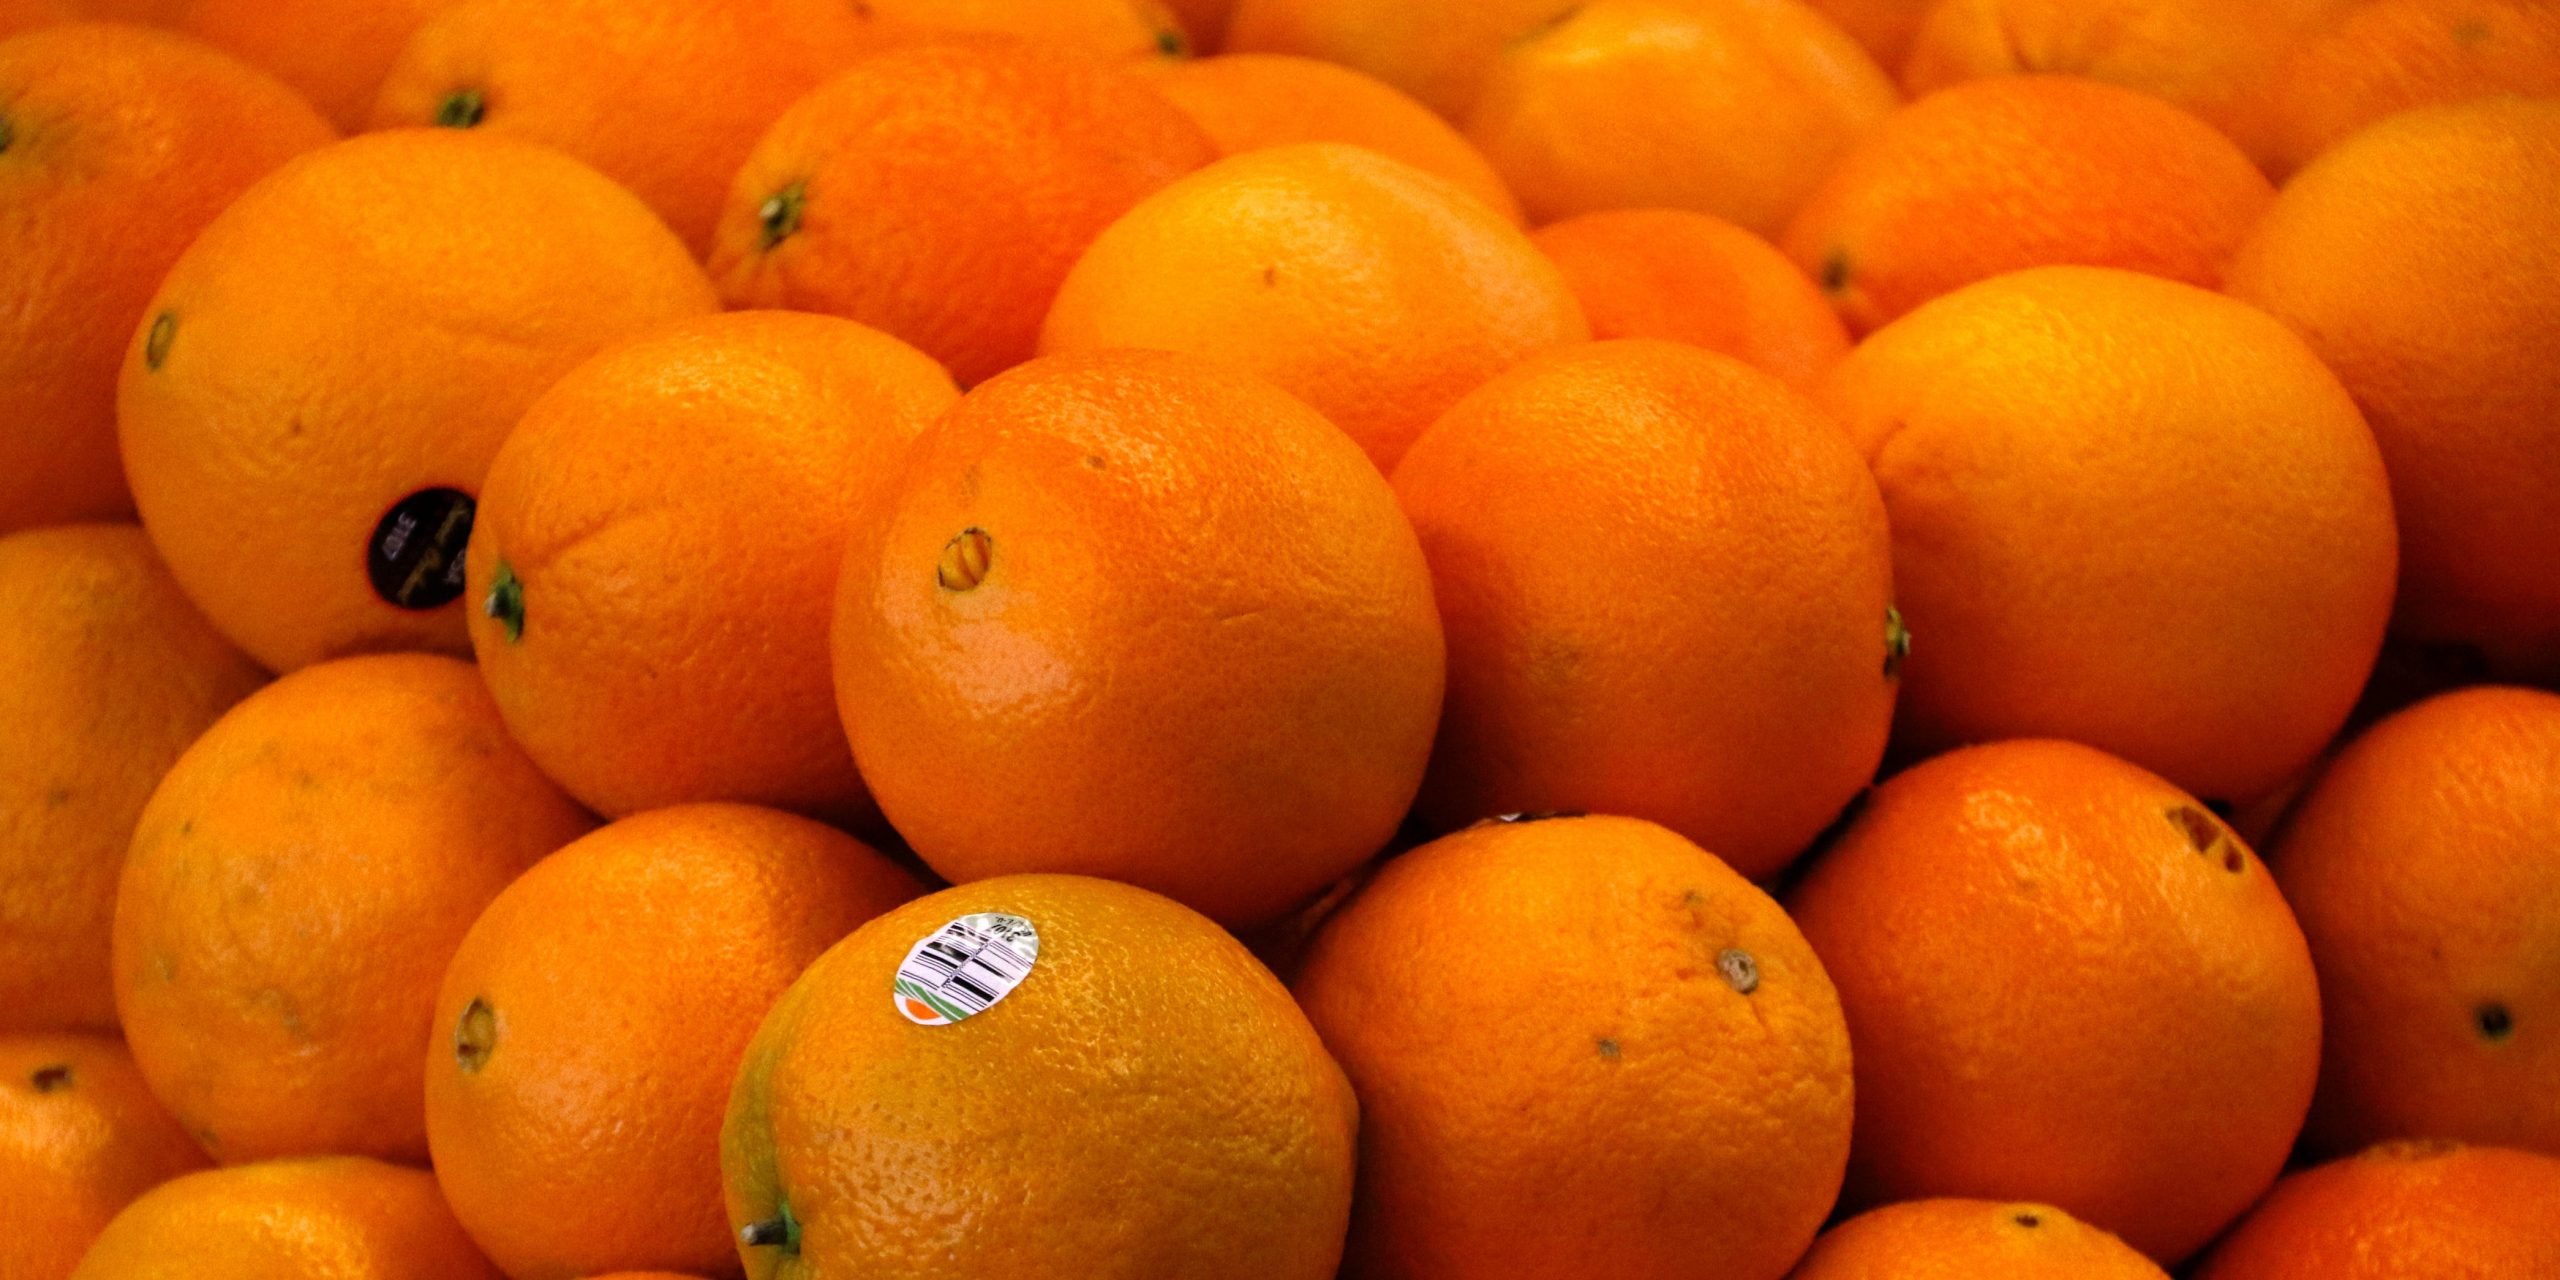 oranges orange fruit citrus